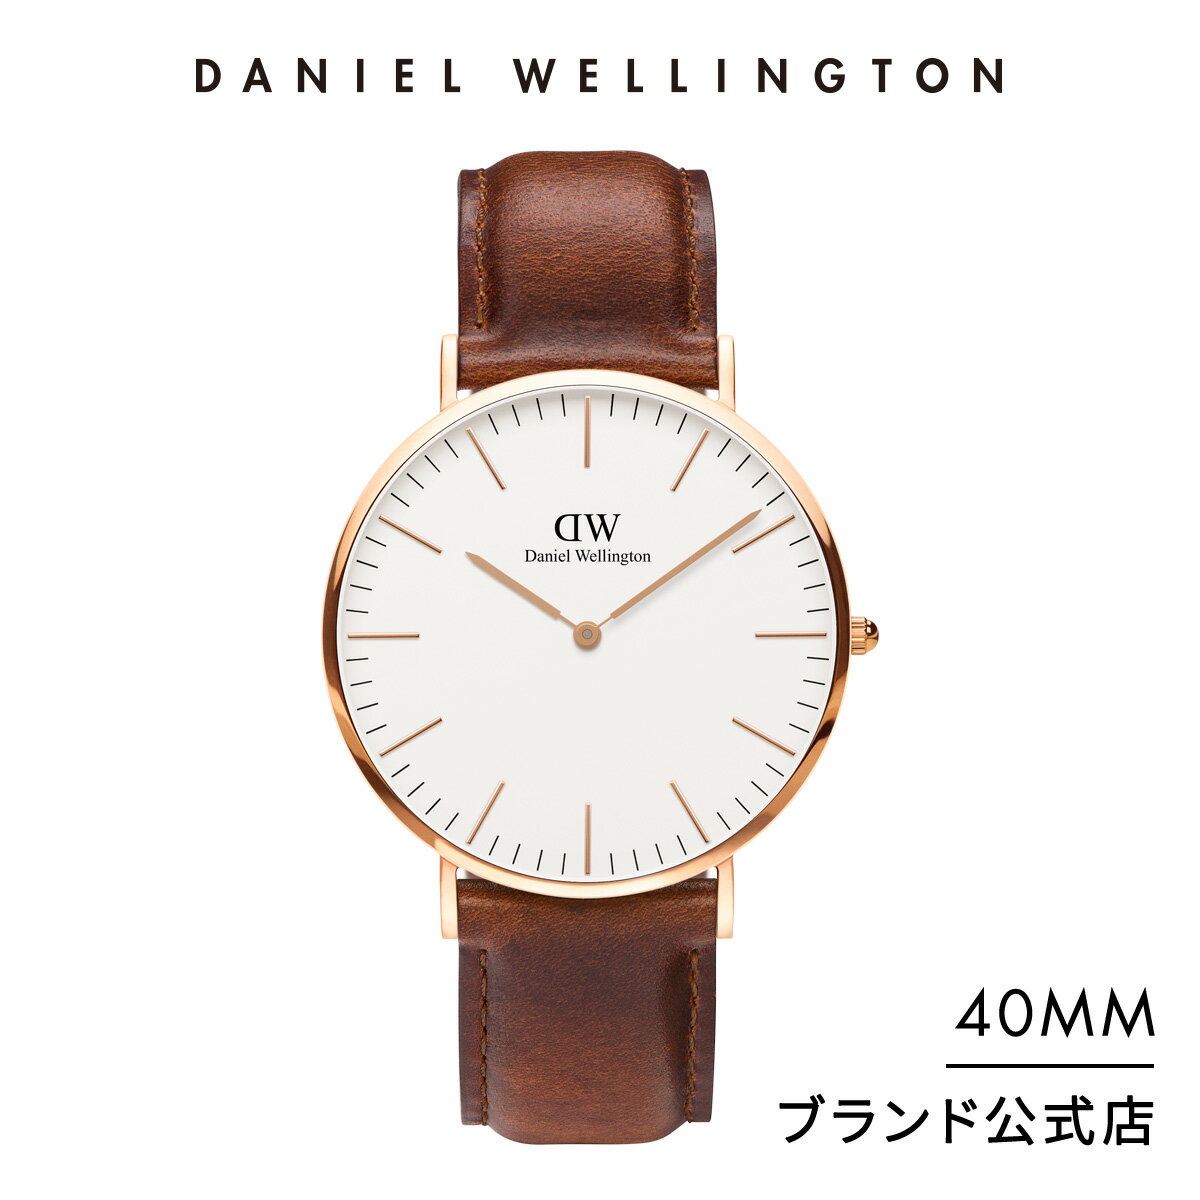 腕時計 メンズ ダニエルウェリントン daniel wellington DW Classic St Mawes 40mm 時計 ブランド 20代 30代 ウォッチ 革 高級 おしゃれ 人気 かっこいい シンプル カジュアル 男性 父の日 ギ…